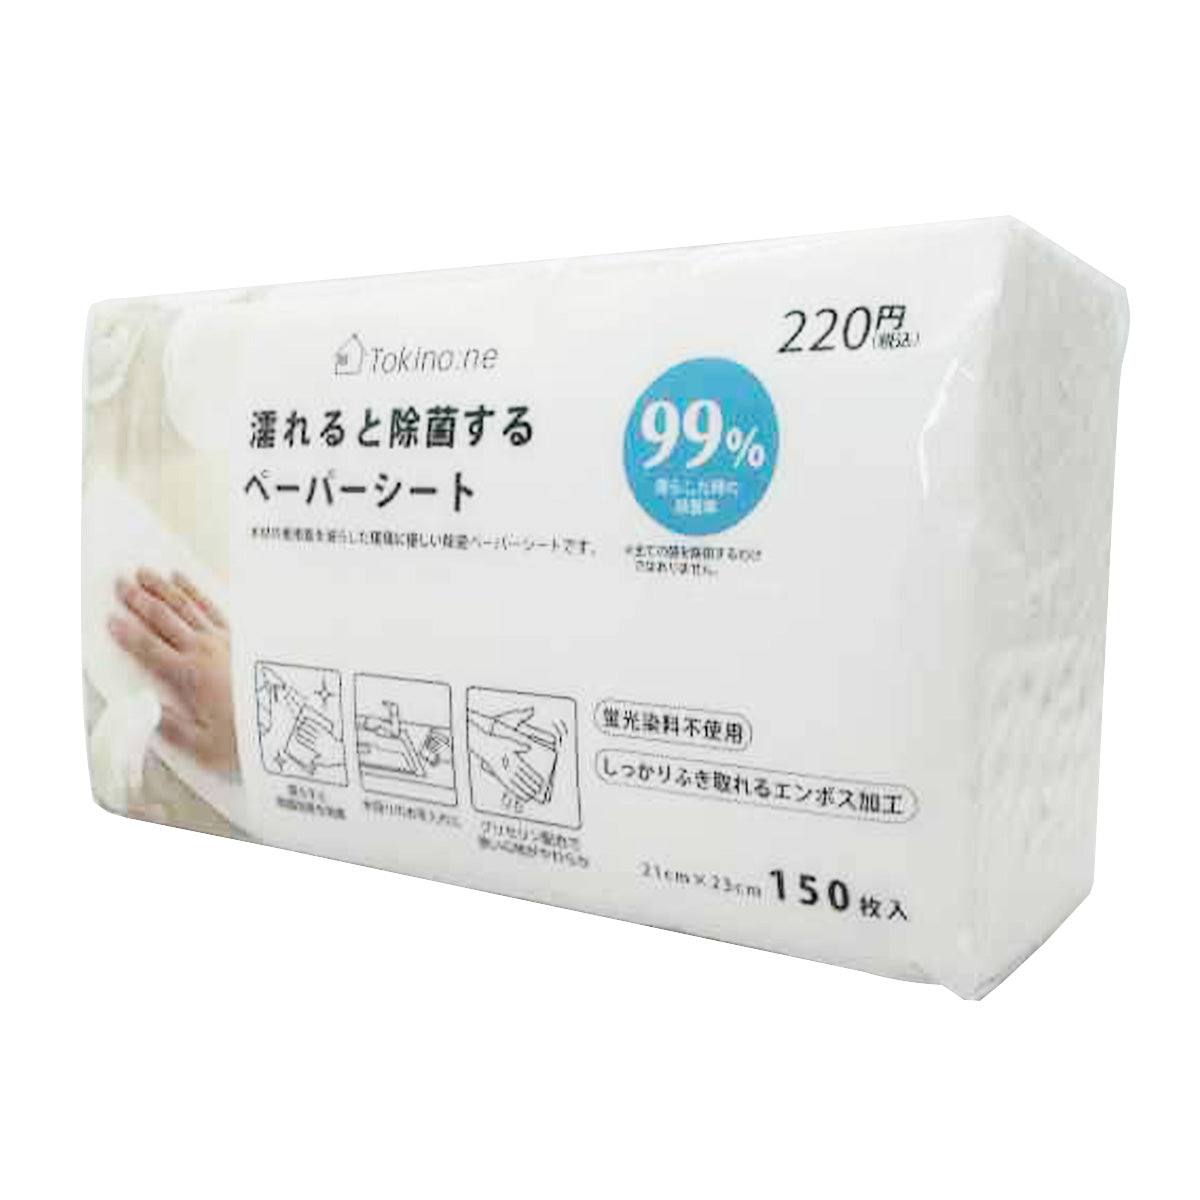 ペーパータオル 紙タオル  Tokinone PB.濡れると除菌するペーパーシート 055009